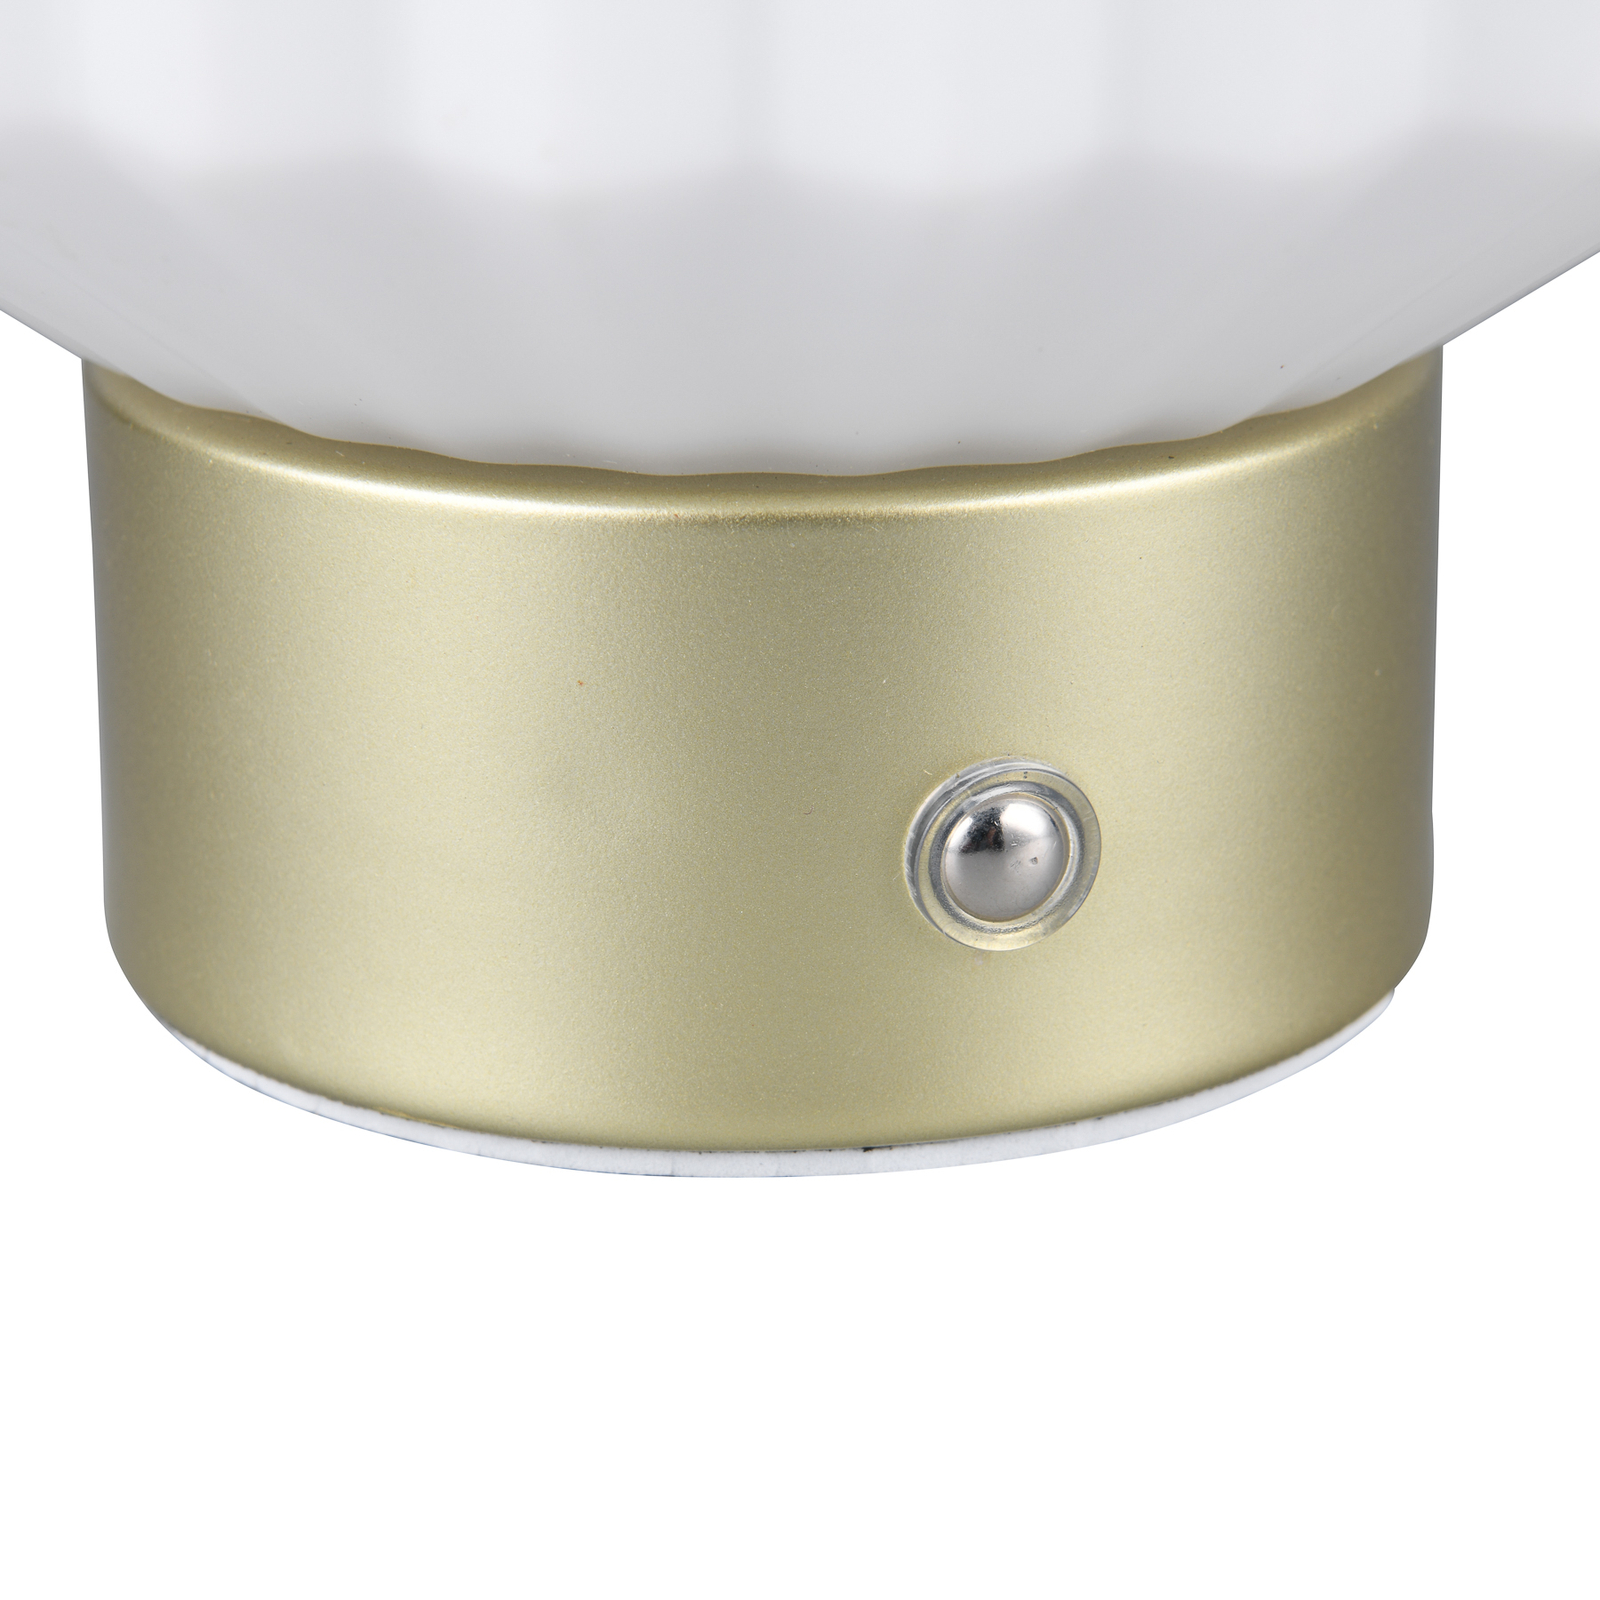 Lord LED genopladelig bordlampe, messing/opal, højde 19,5 cm, glas